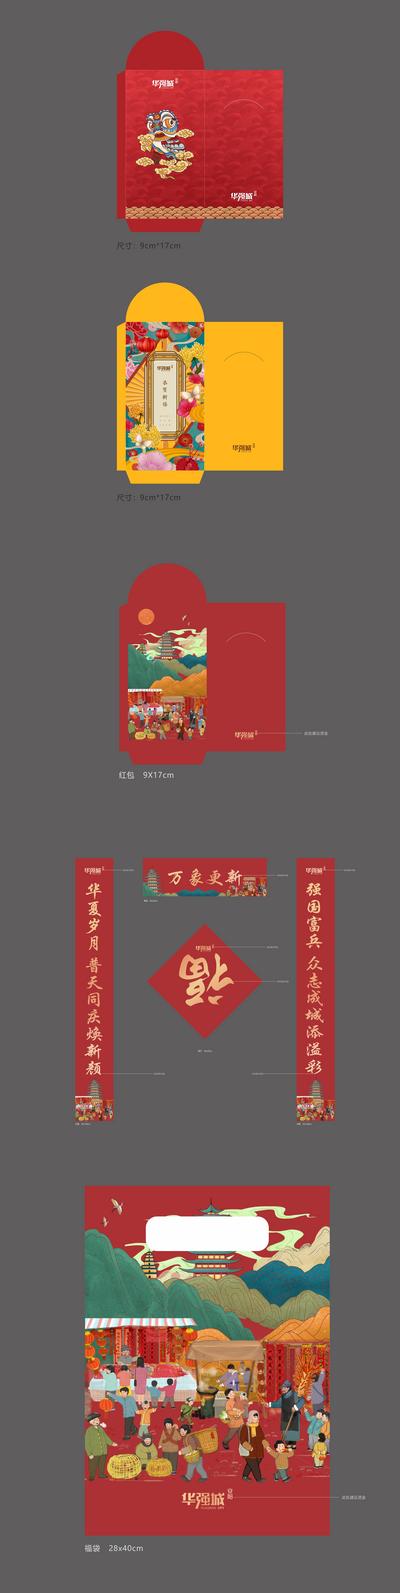 南门网 物料设计 春联 福字 福袋 地产 春节 中国传统节日 红包 国潮 手绘 插画 中式 